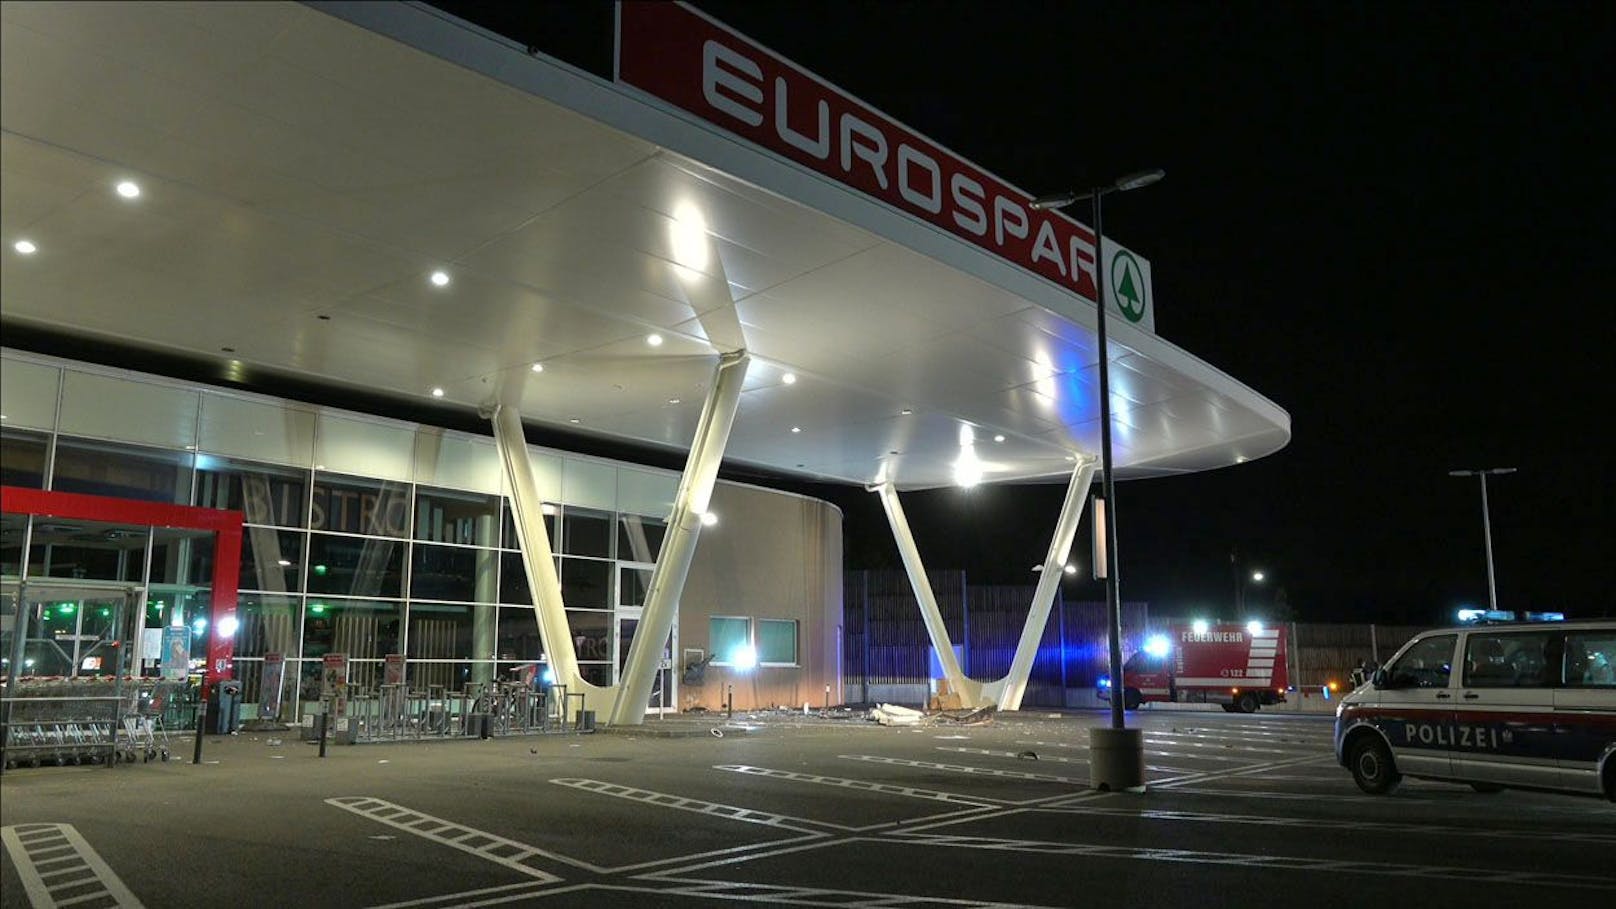 Feuerwehr und Polizei standen am Parkplatz des Eurospar in Baden im Einsatz.